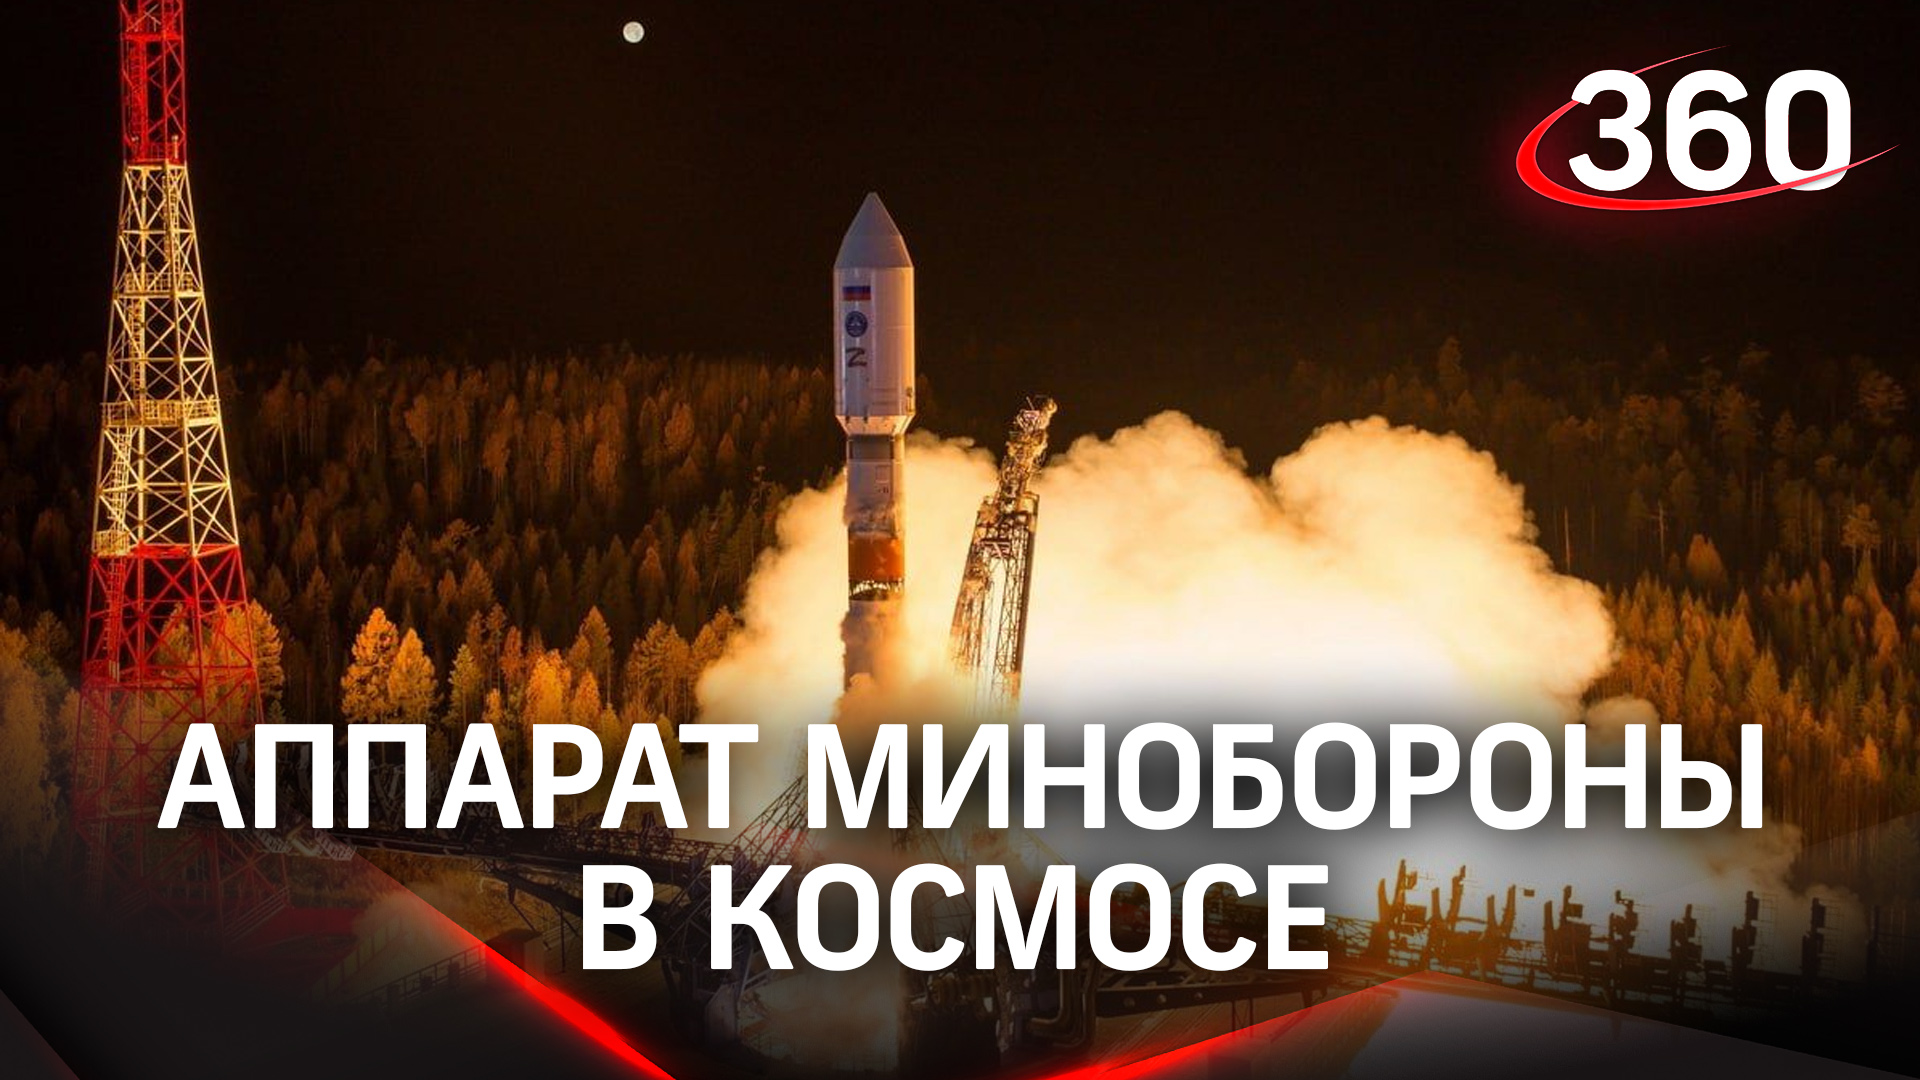 Связь установили: аппарат Минобороны России успешно обосновался в космосе